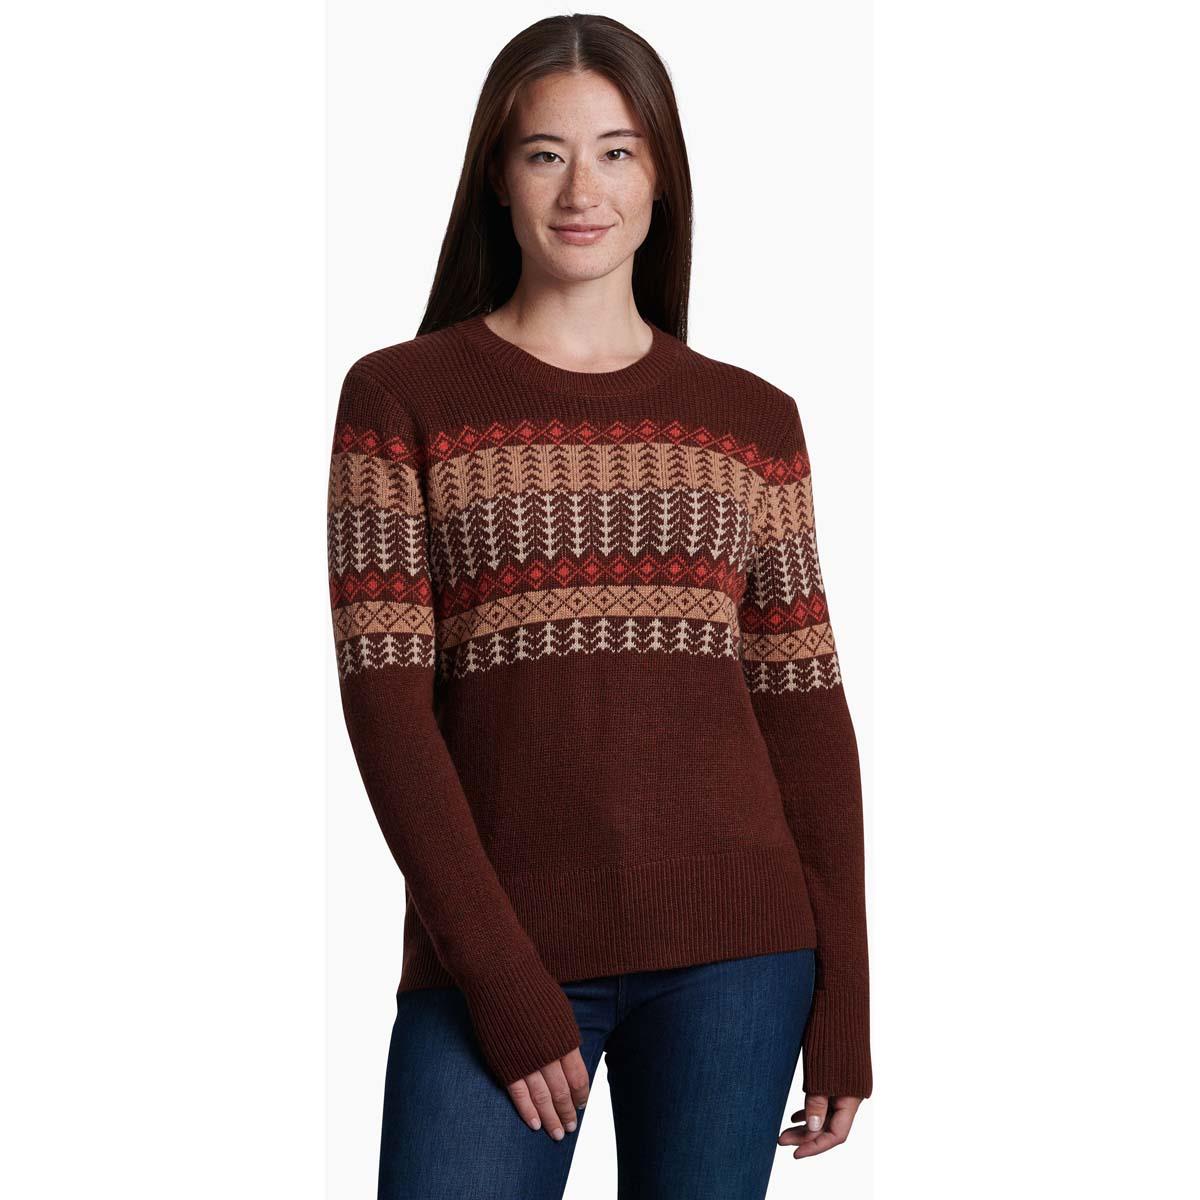 Womens Kuhl sweater size M  Sweaters, Sweater sizes, Women